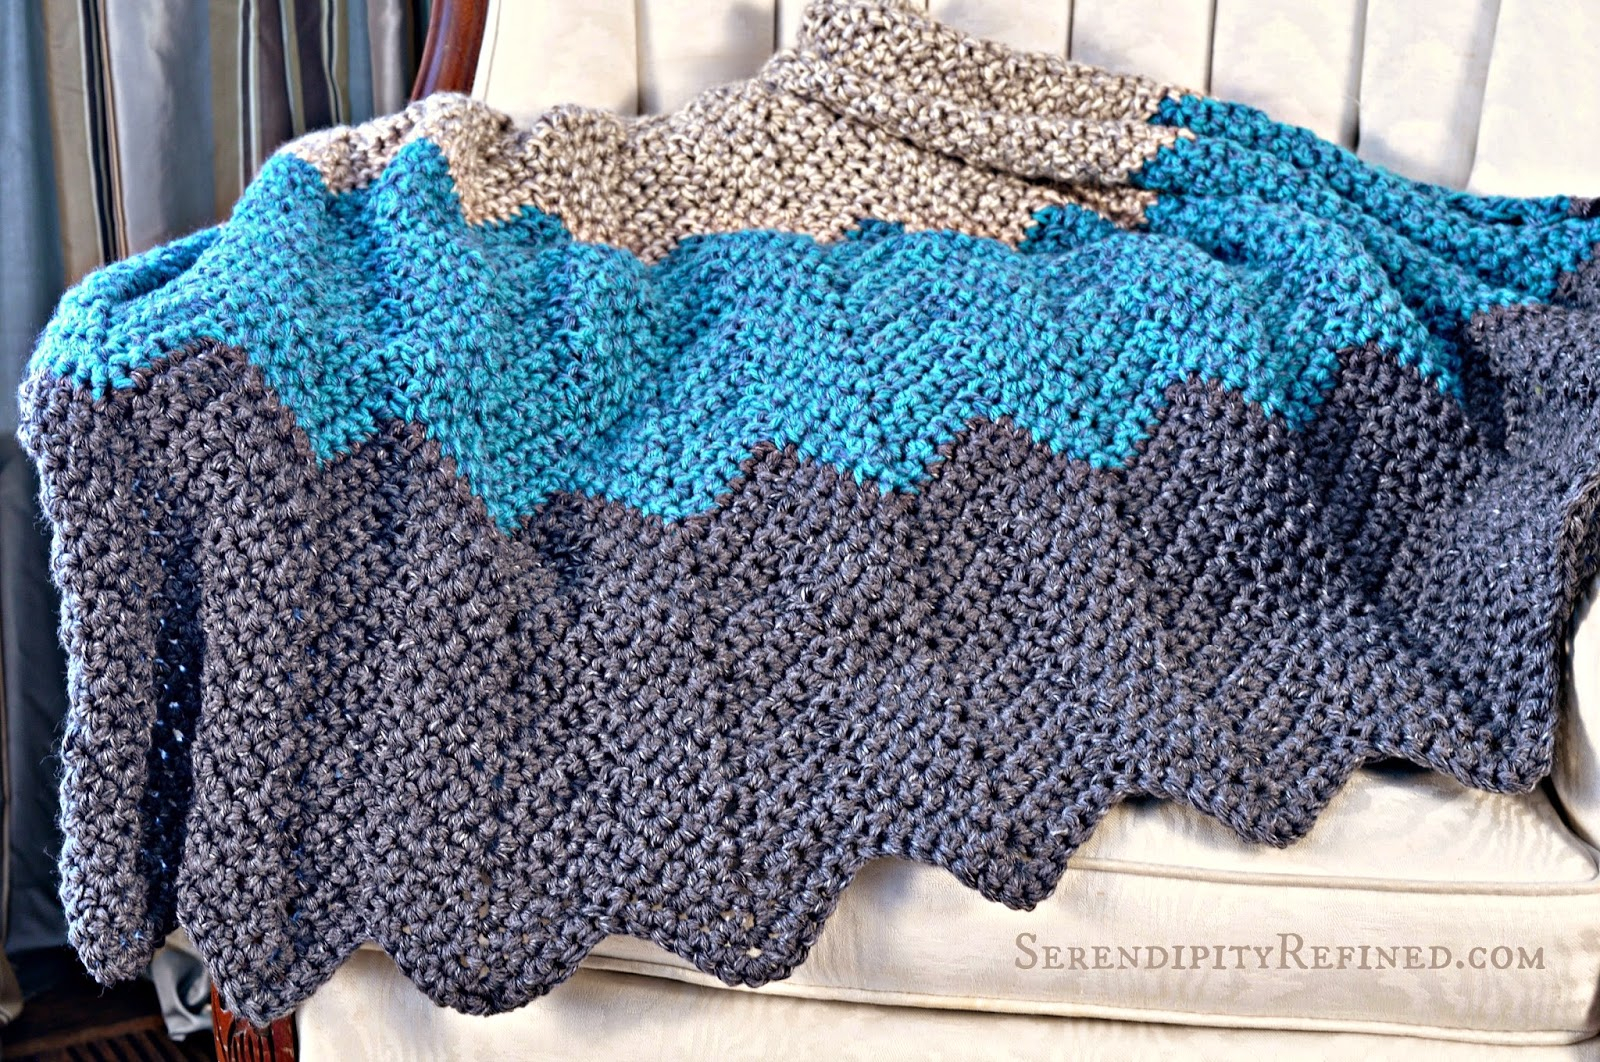 Crochet Blanket Pattern For Beginners Easy Crochet Throw Patterns For Beginners Crochet And Knit Bean Bag